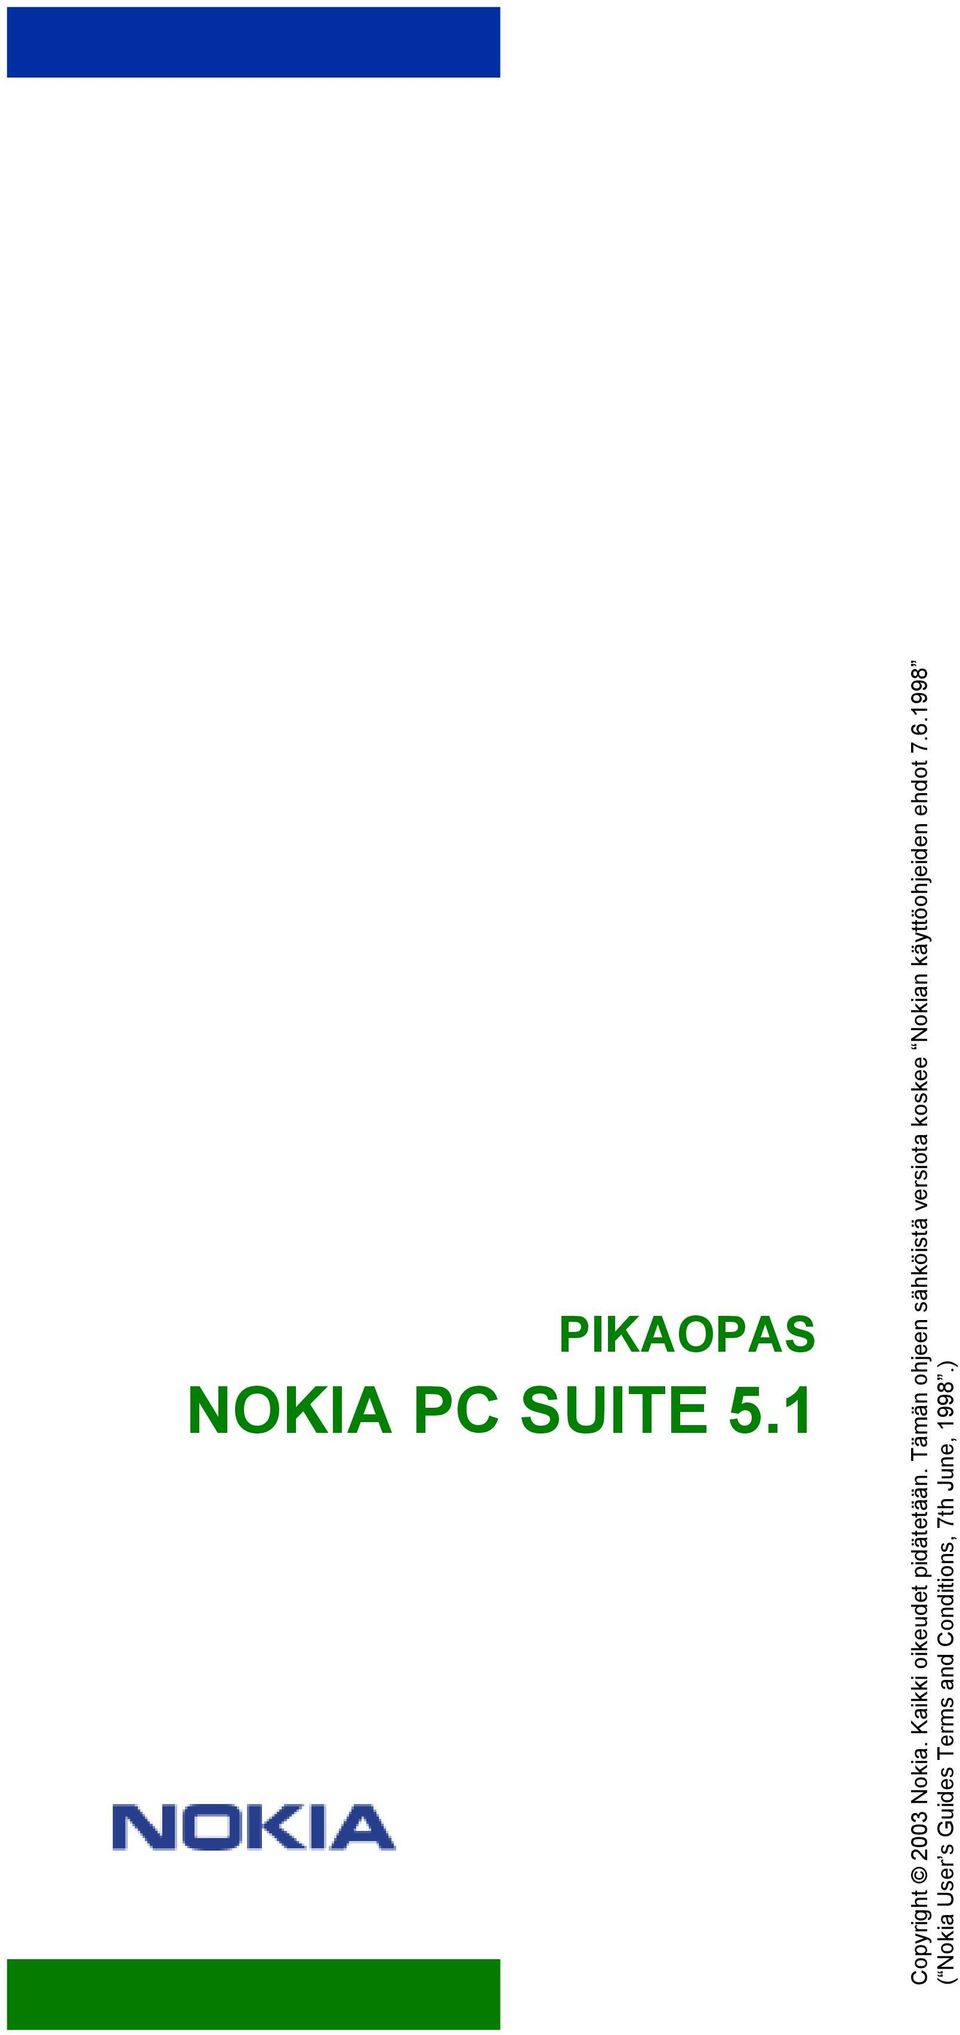 Tämän ohjeen sähköistä versiota koskee Nokian